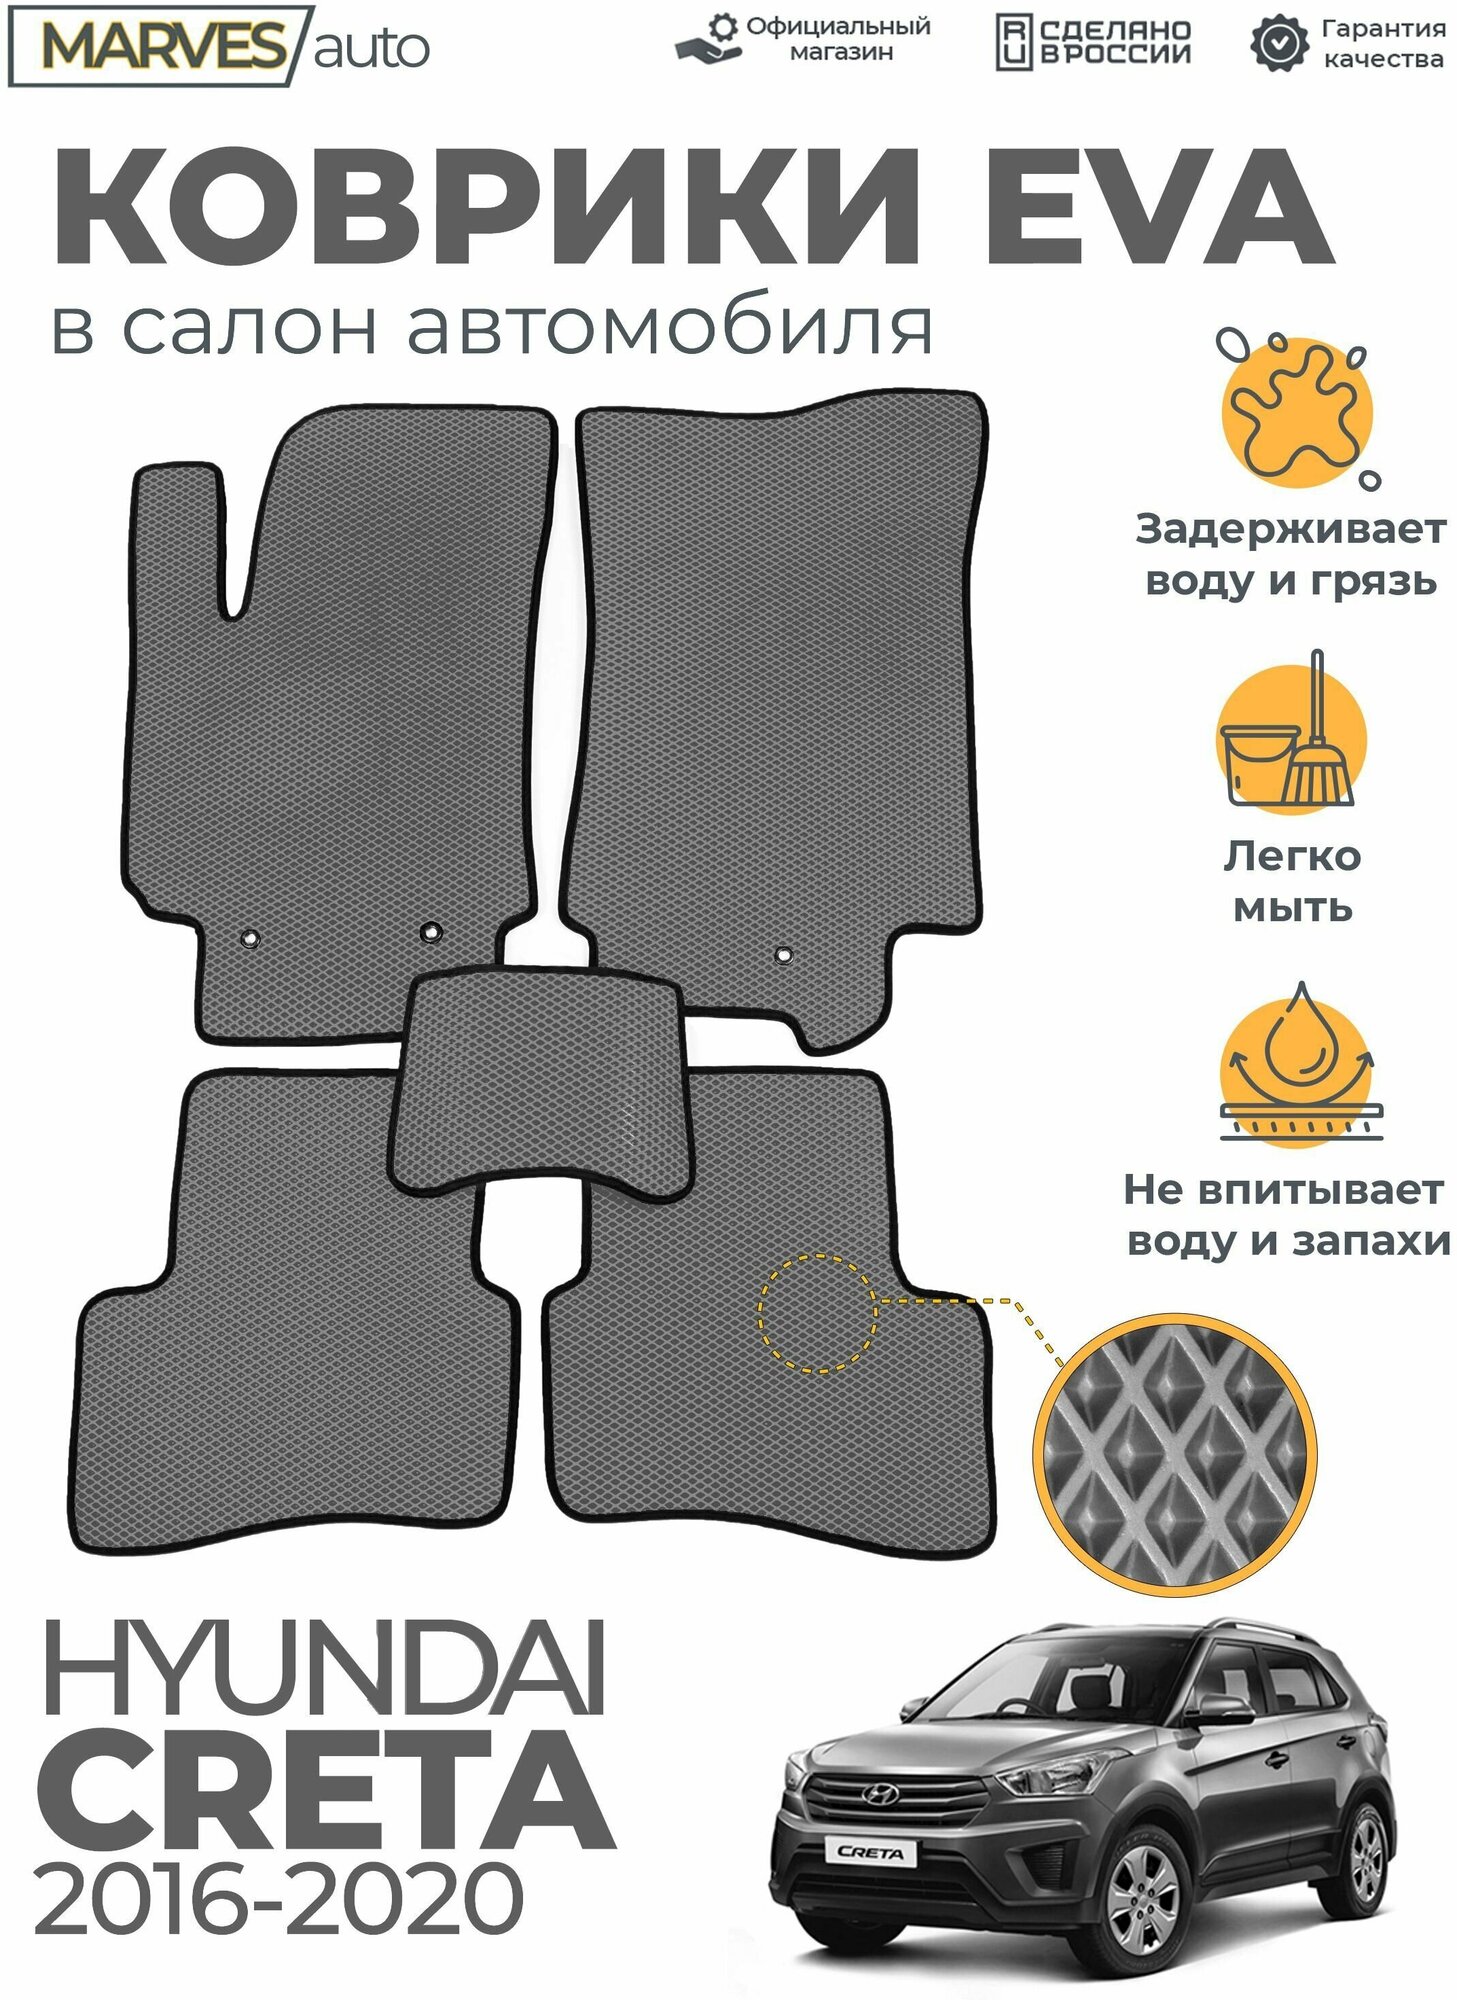 Коврики EVA (ЭВА, ЕВА) в салон автомобиля Hyundai Creta (2016-2020), комплект 5 шт, серый ромб/черный кант